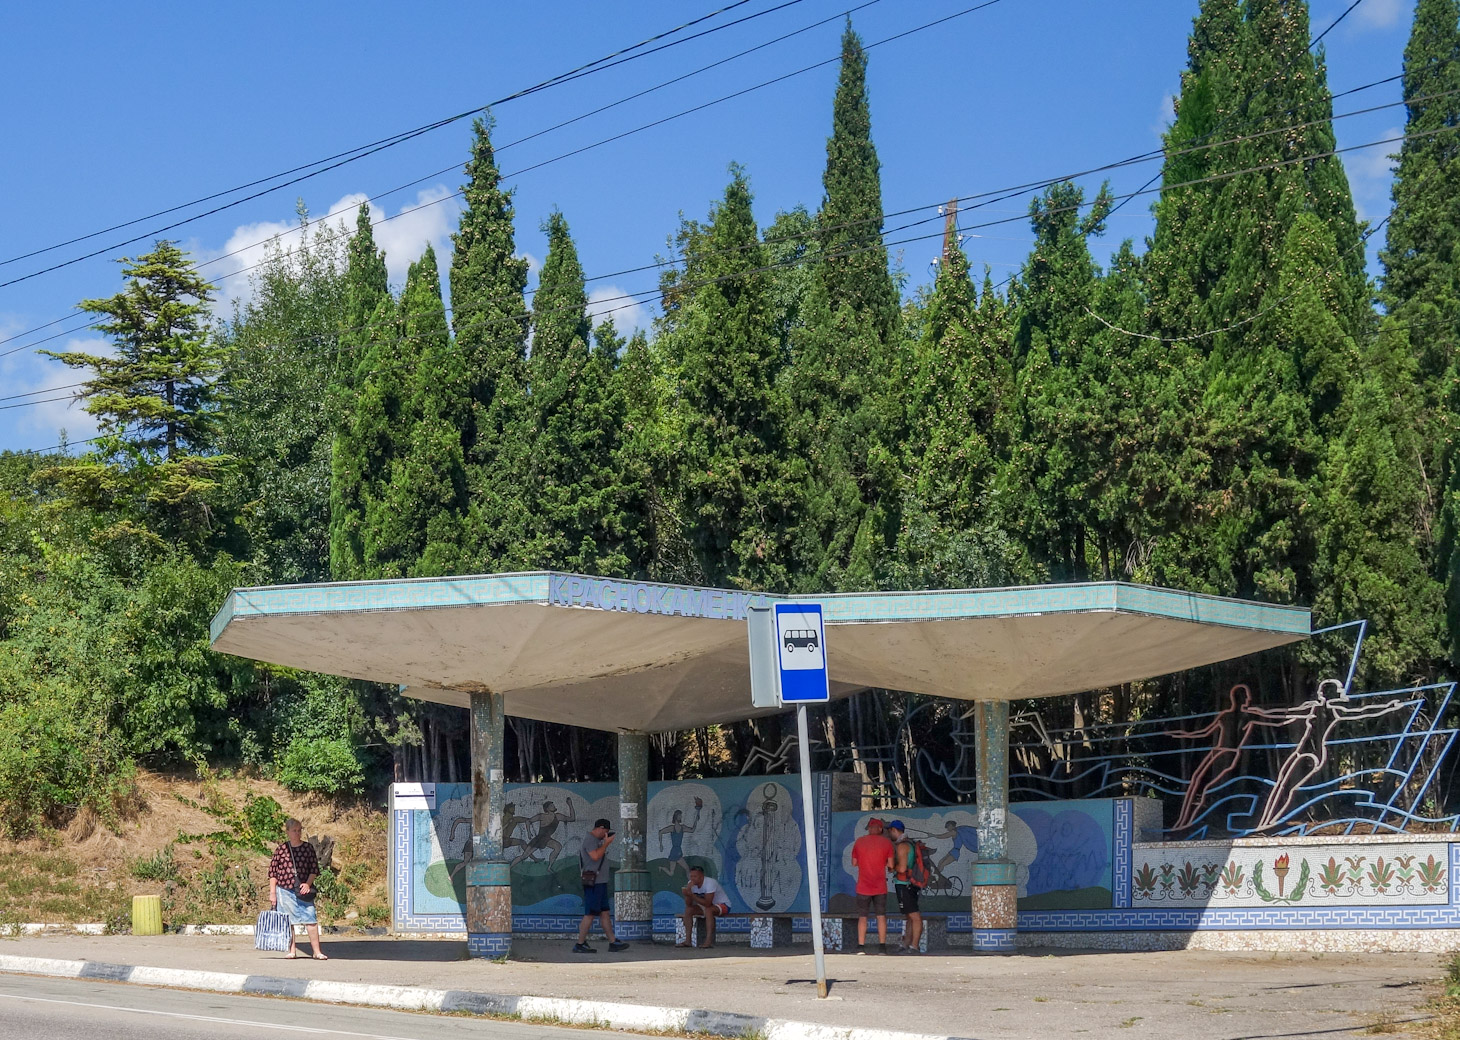 Крымский троллейбус — Остановочные павильоны, аншлаги на остановках